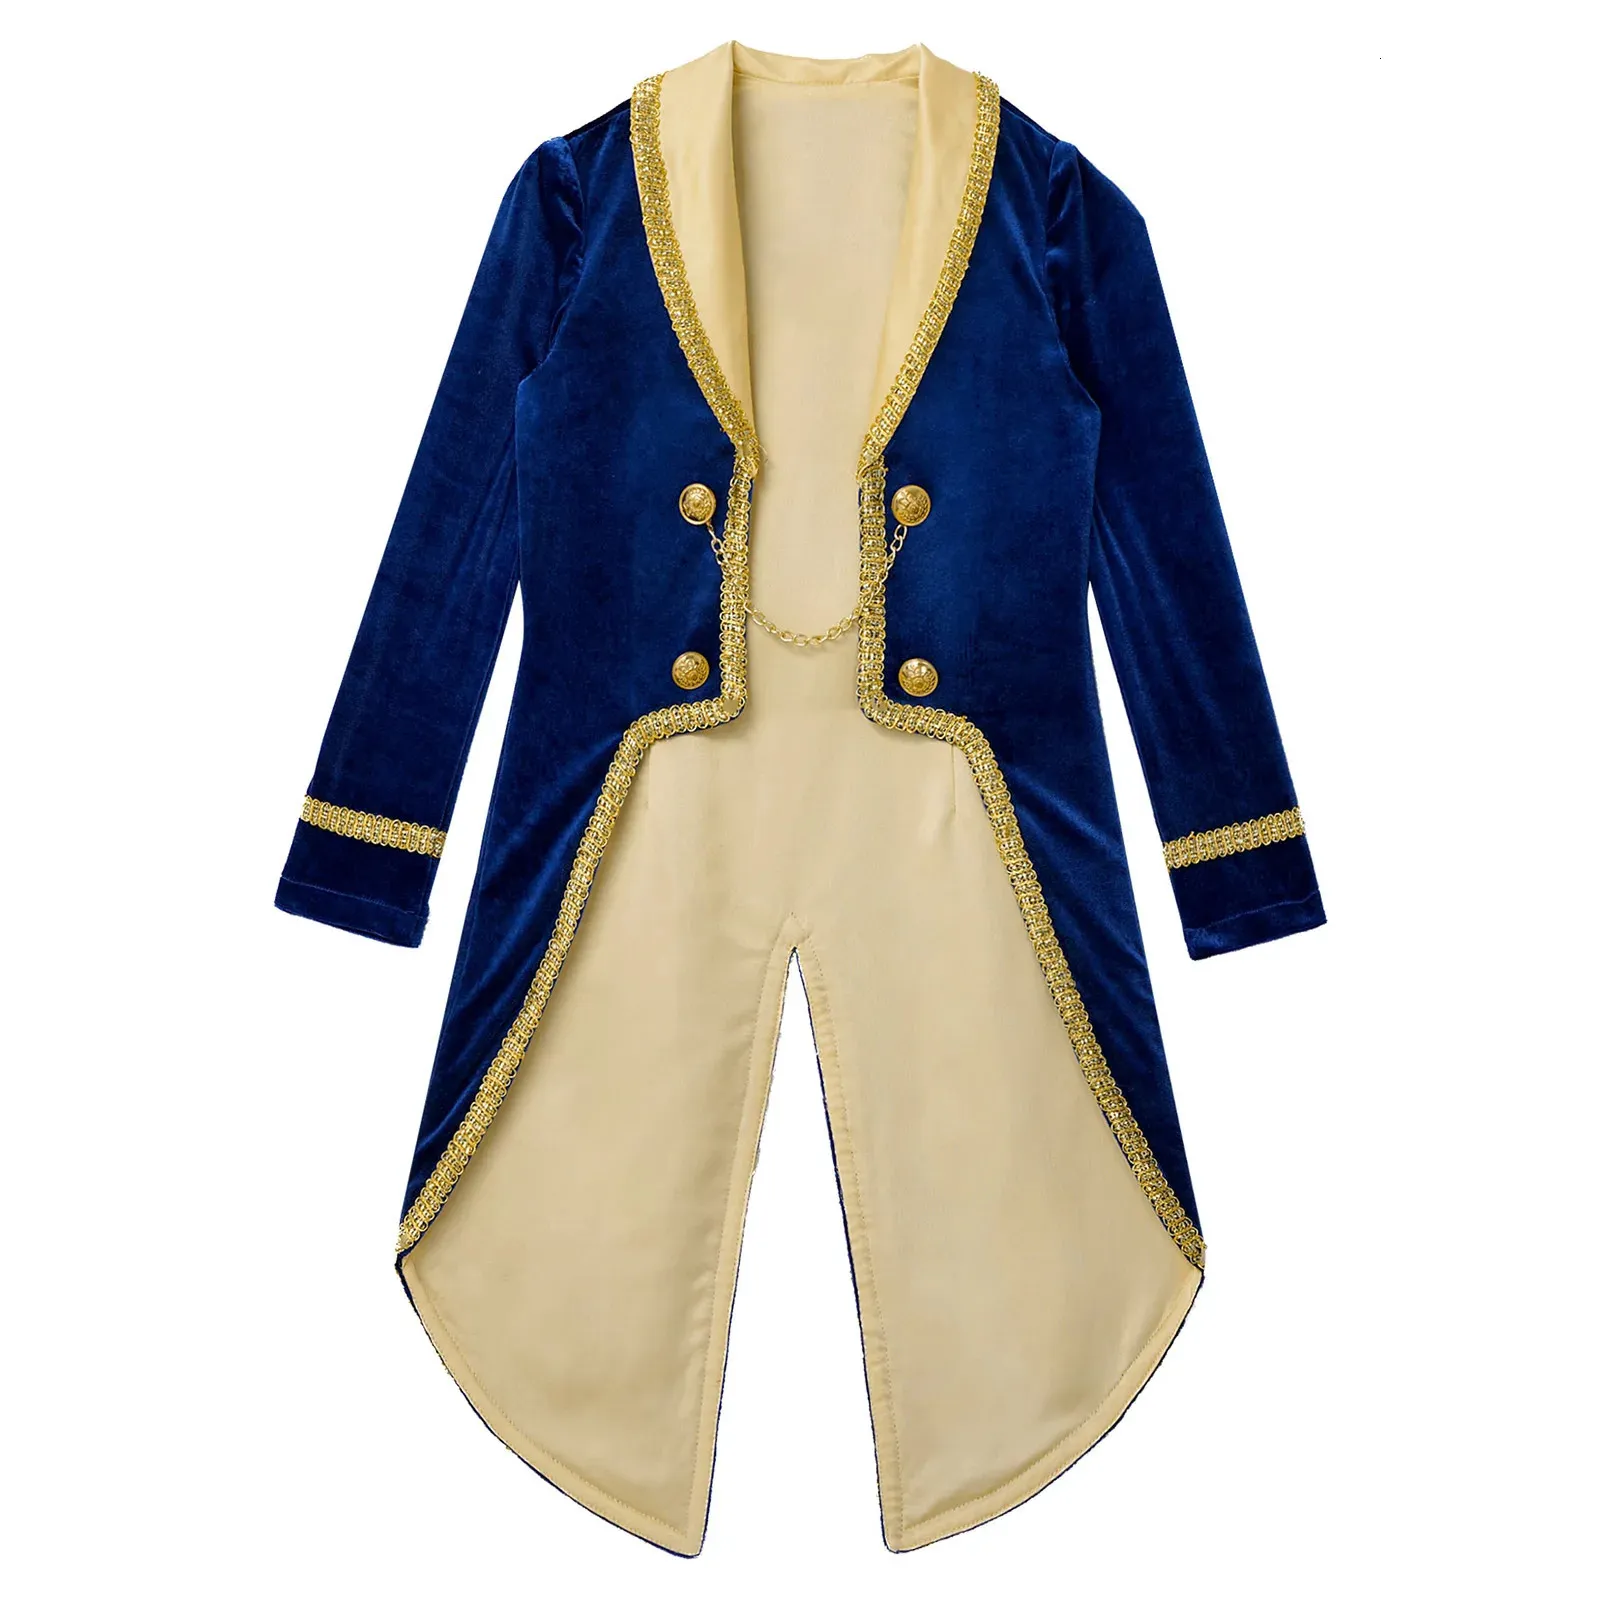 الأطفال الأولاد الأمير tailcoat خمر الملكية الملكية الهالوين كوزبلاي لباس موضوع الأزياء الطويلة الأكمام توكسيدو سترة 240122